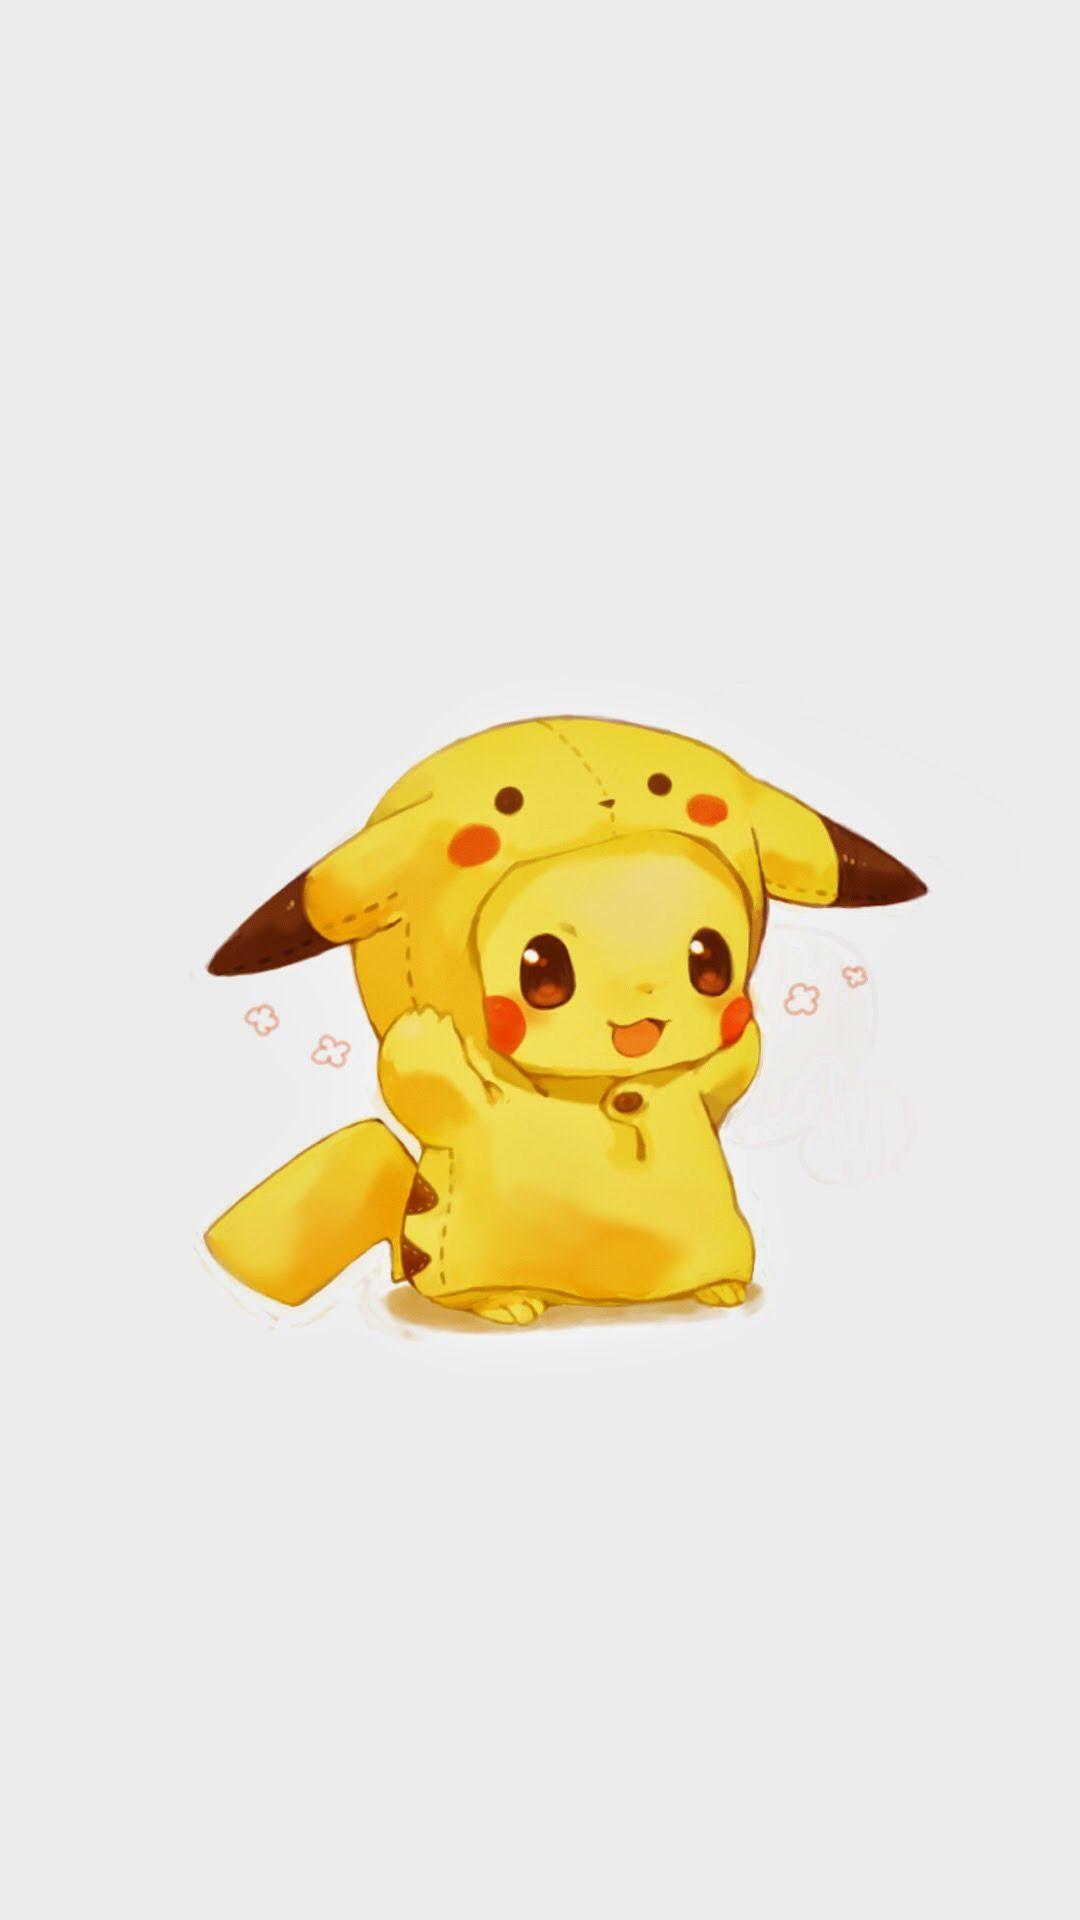 Cute Pikachu And Eevee Wallpapers